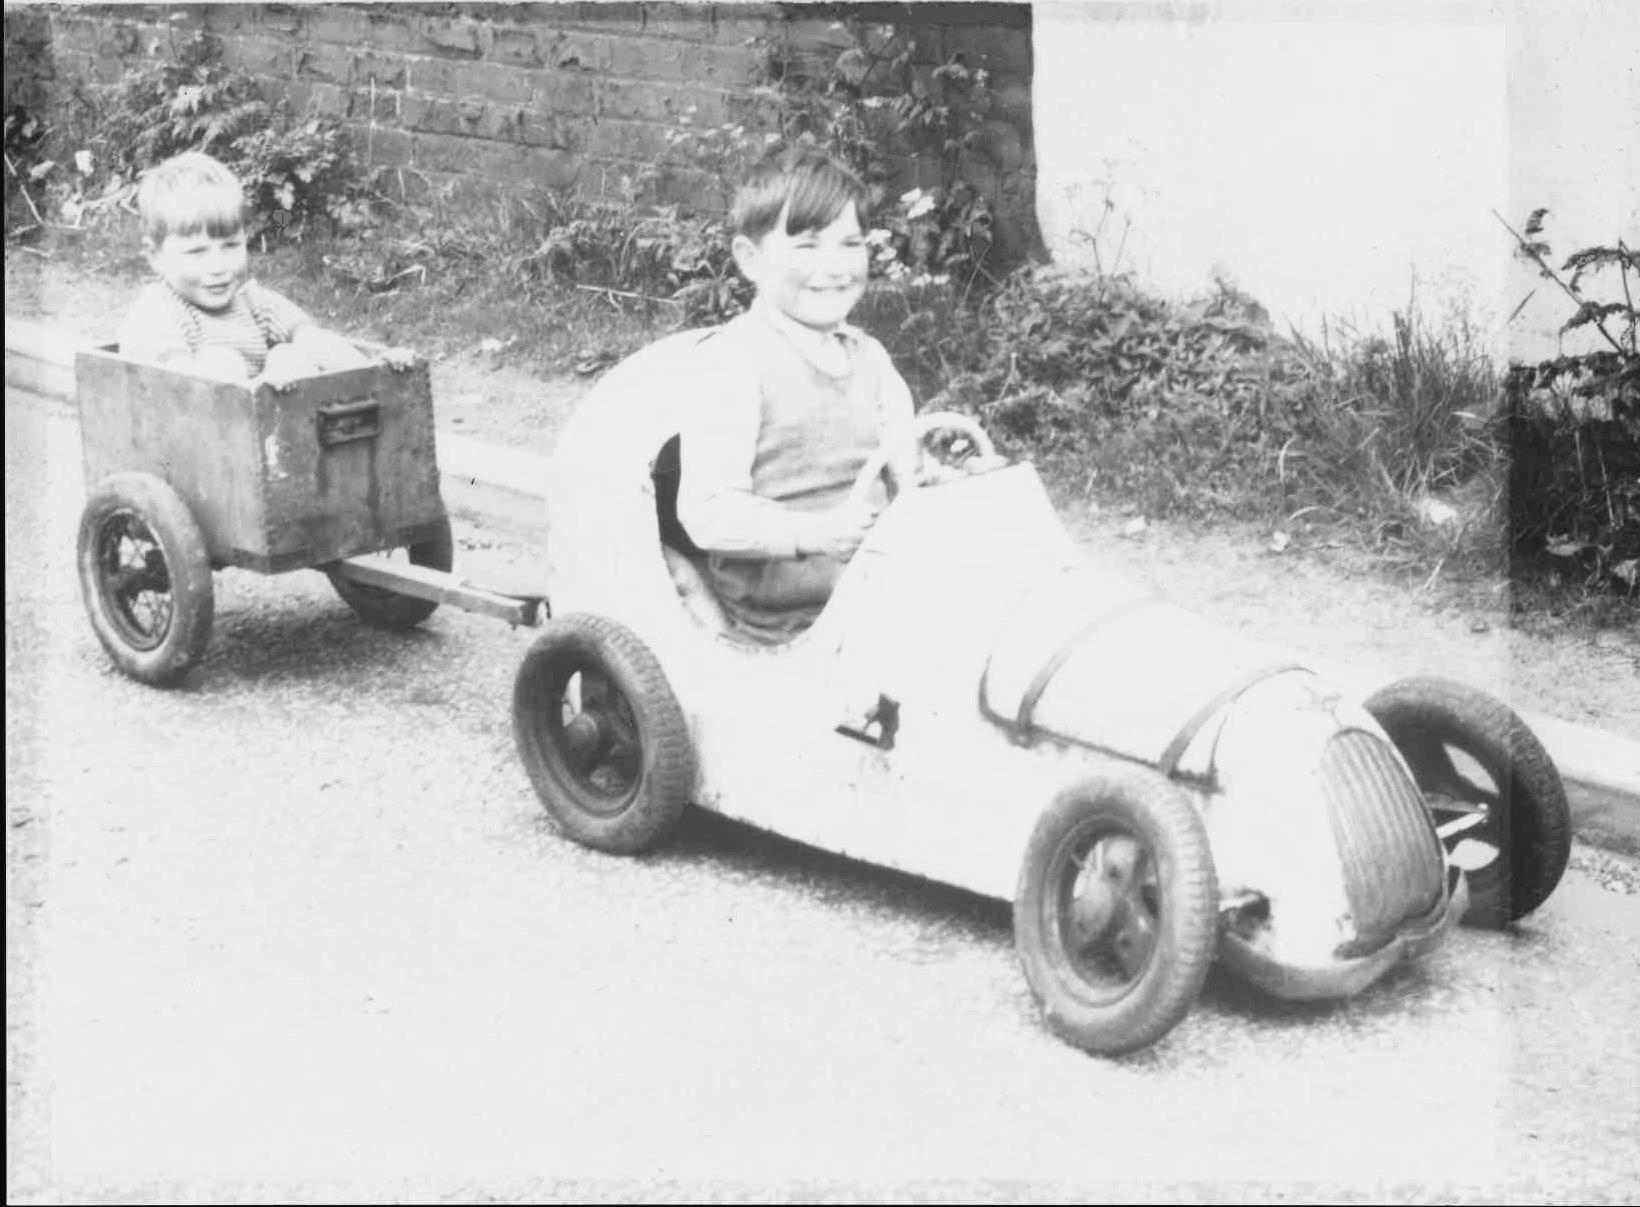 John Wheeldon 10 years old in a pedal car